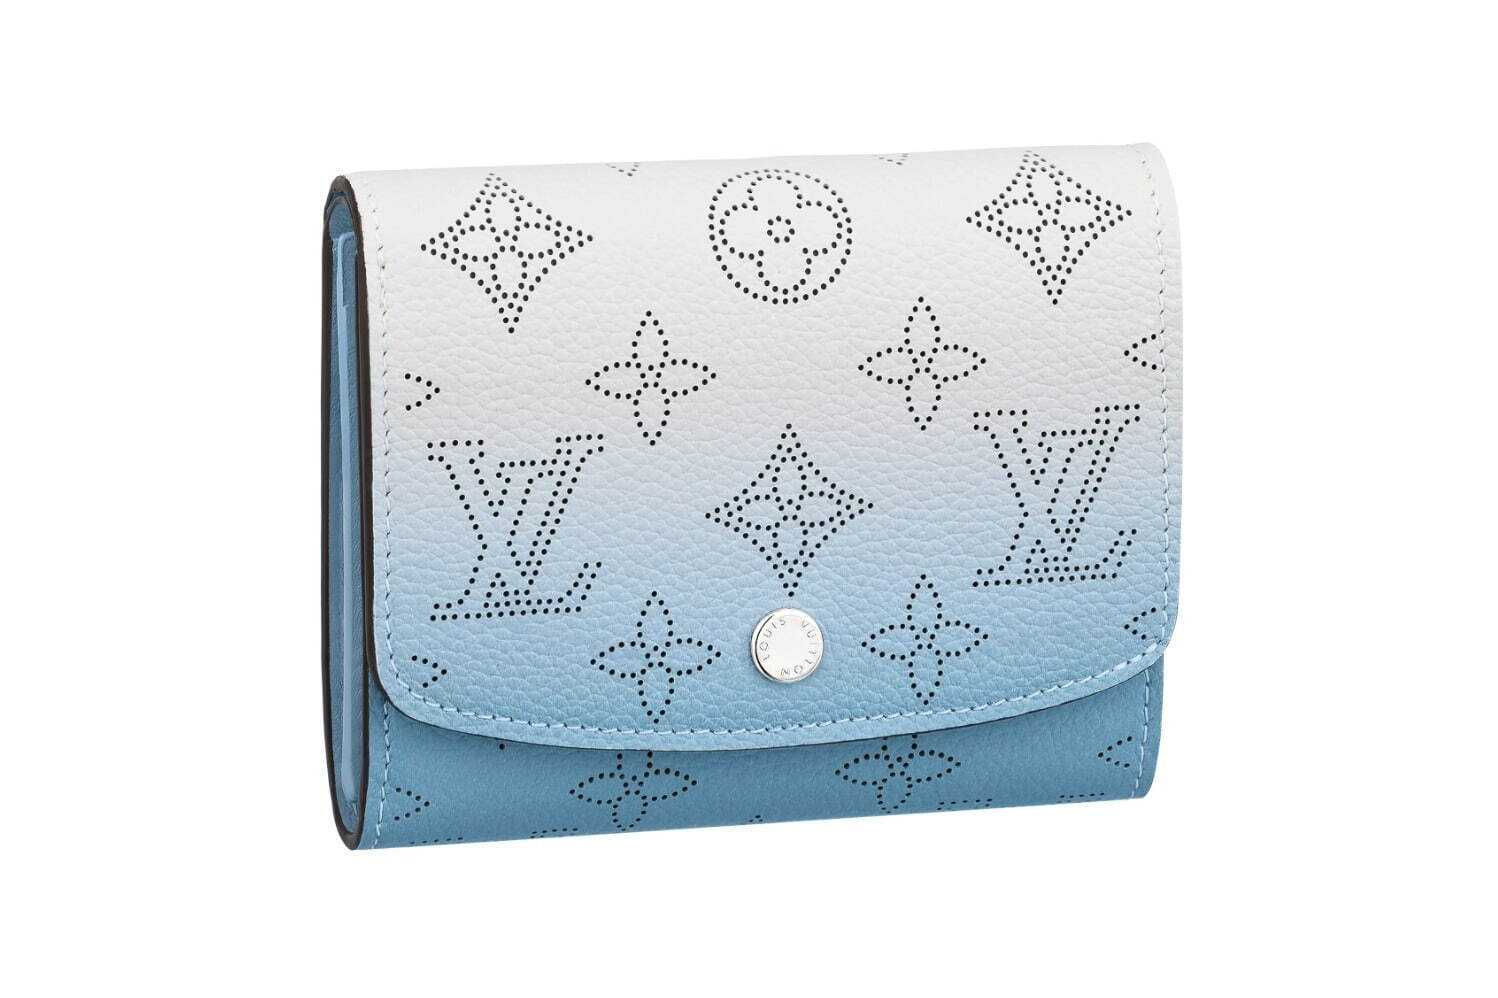 ルイ・ヴィトン“グラデーション”カラーのミニ財布、パステルピンク